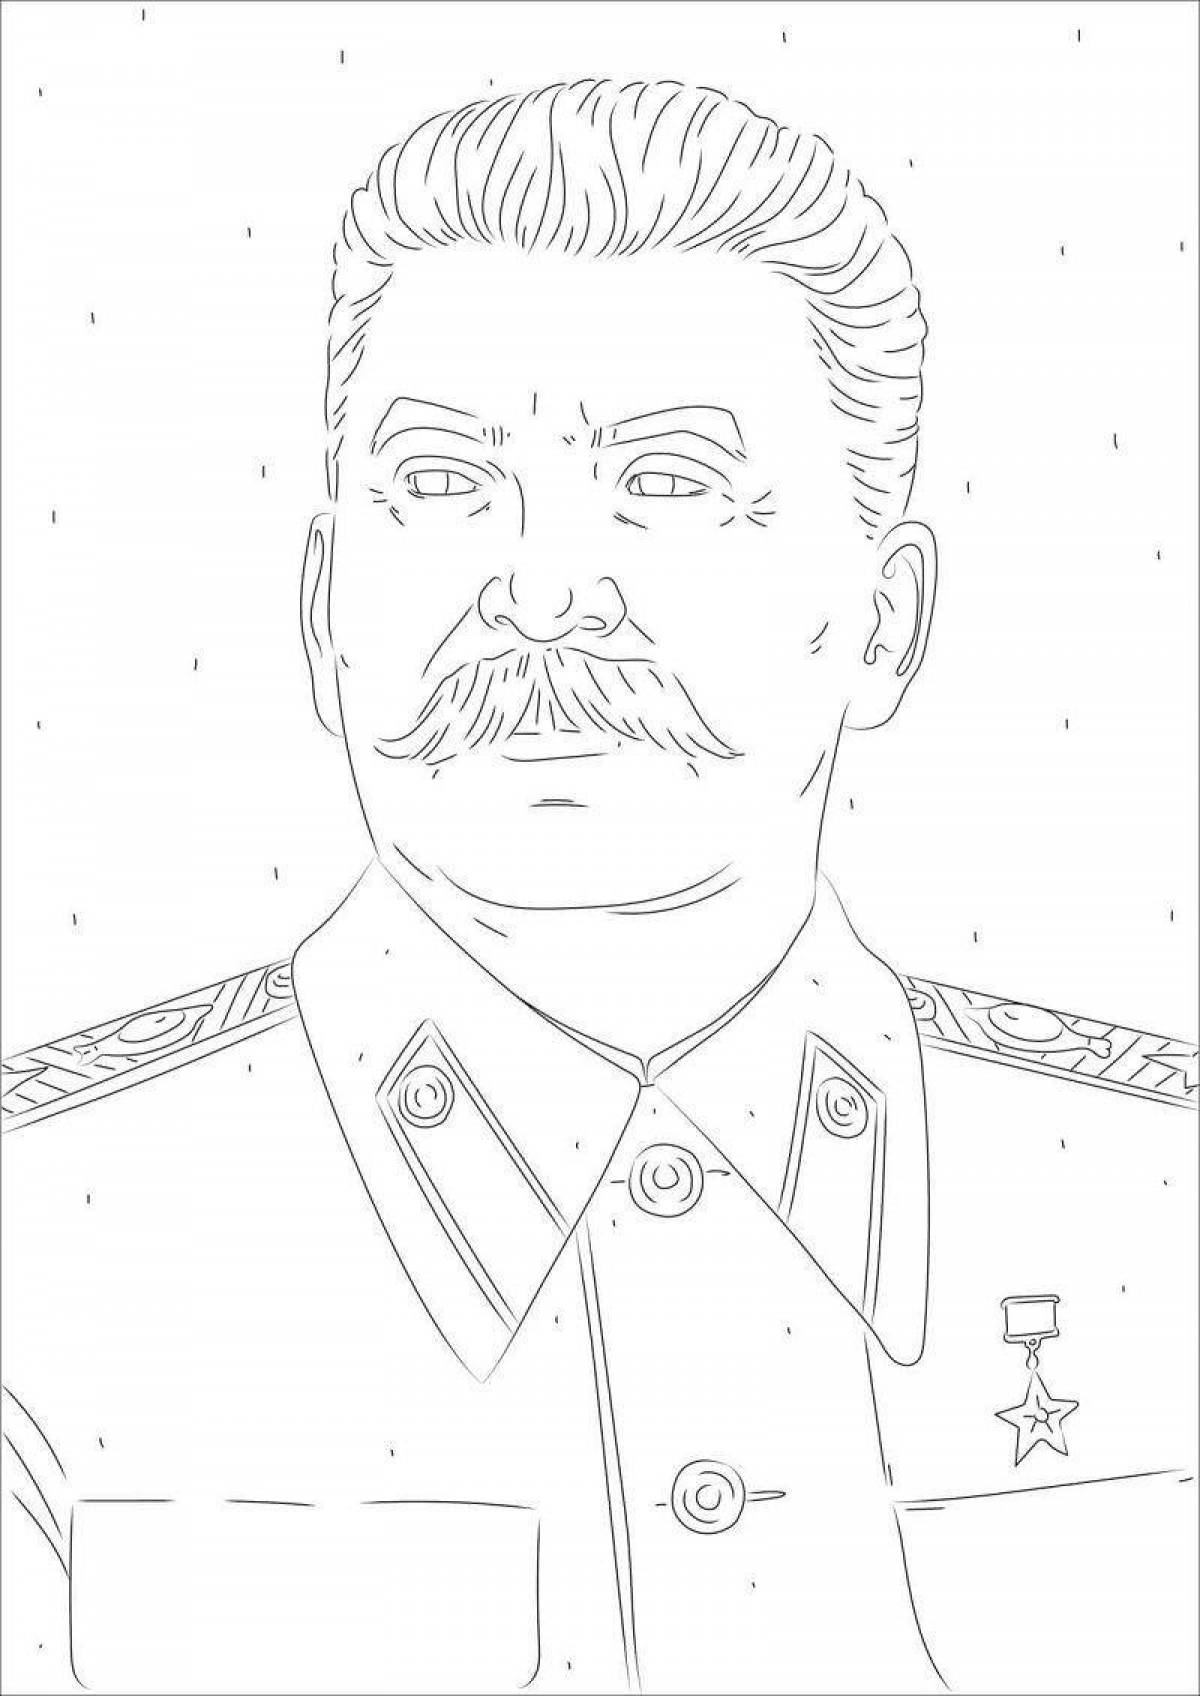 Stalin humorous coloring